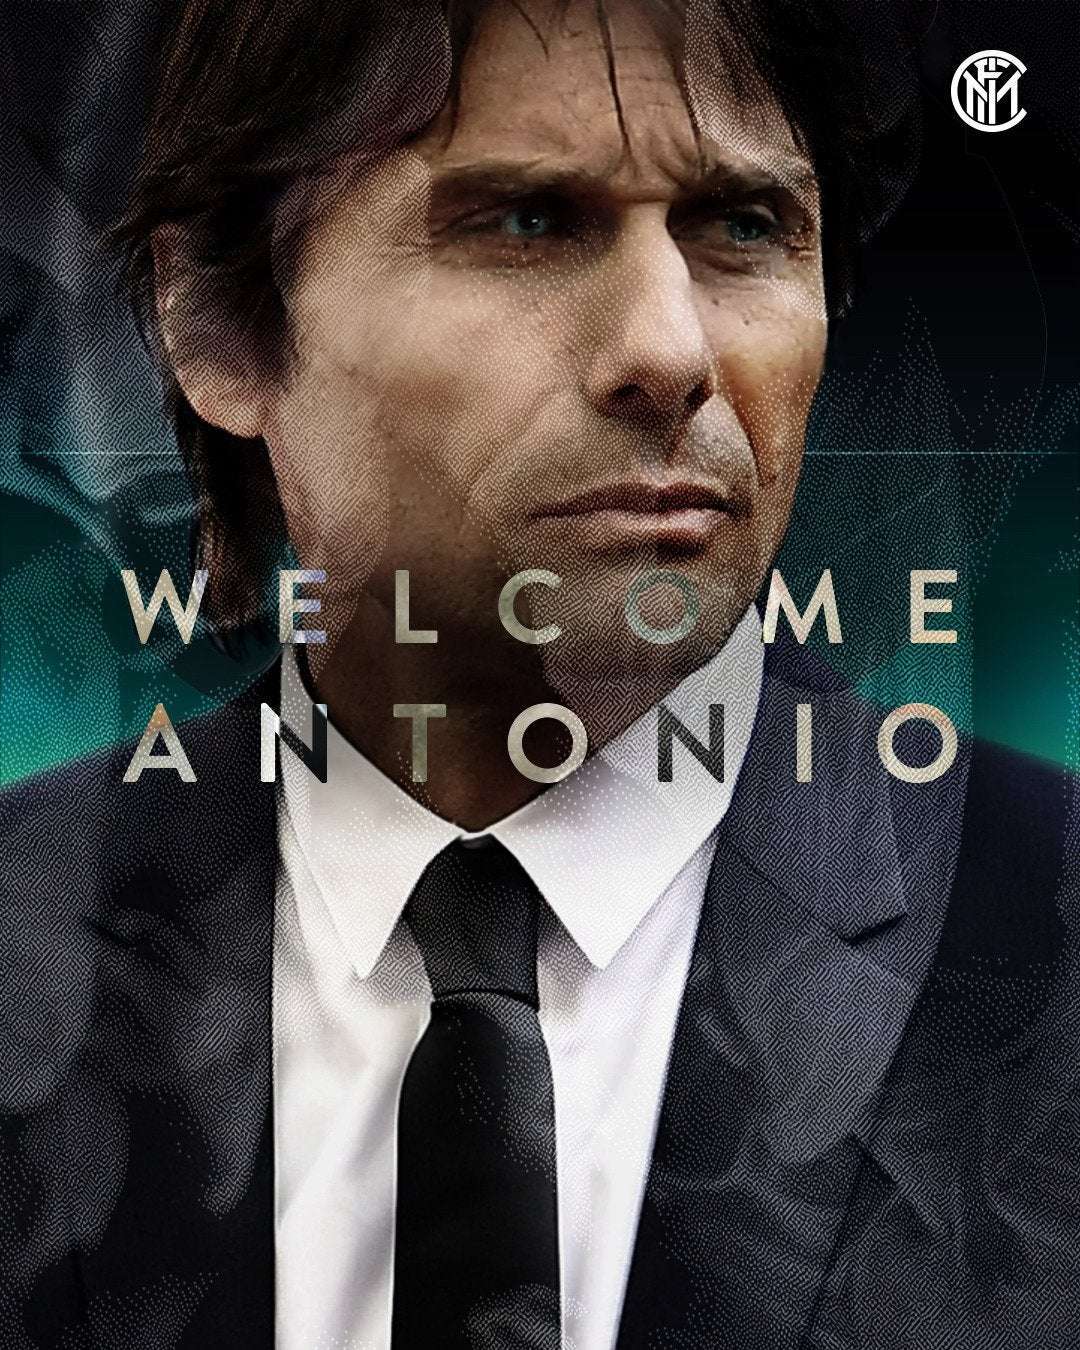 image for UFFICIALE Antonio Conte sarà il nuovo allenatore dell’Inter! #WelcomeAntonio… "